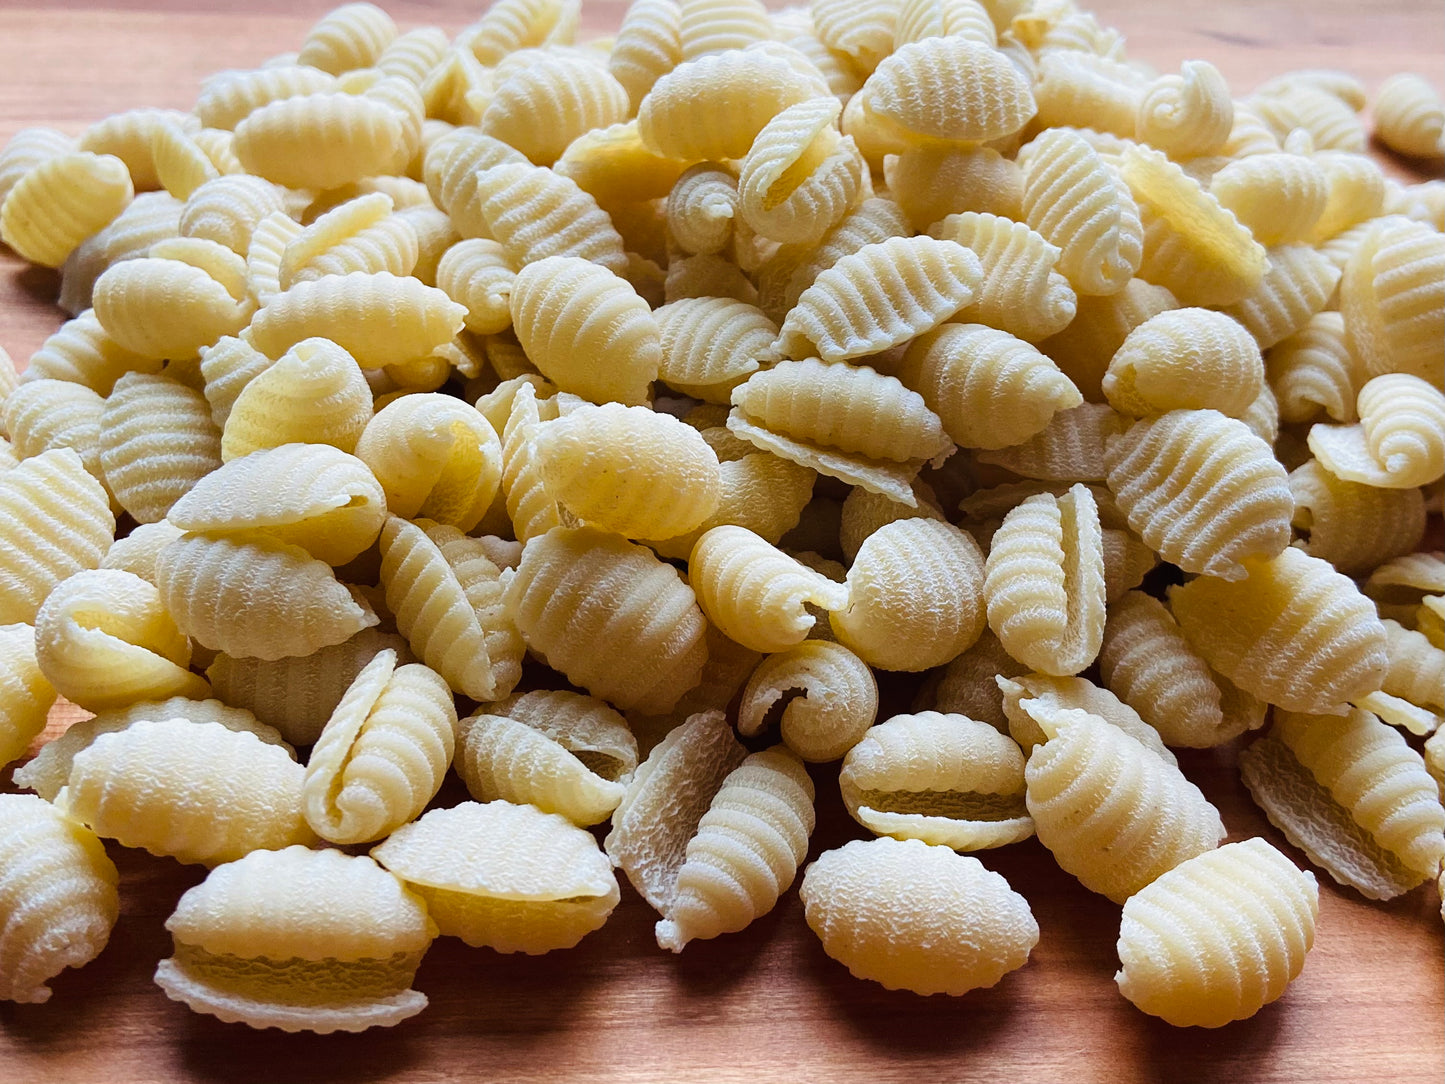 Gnocchetti Sardi Pasta - 4 Pack